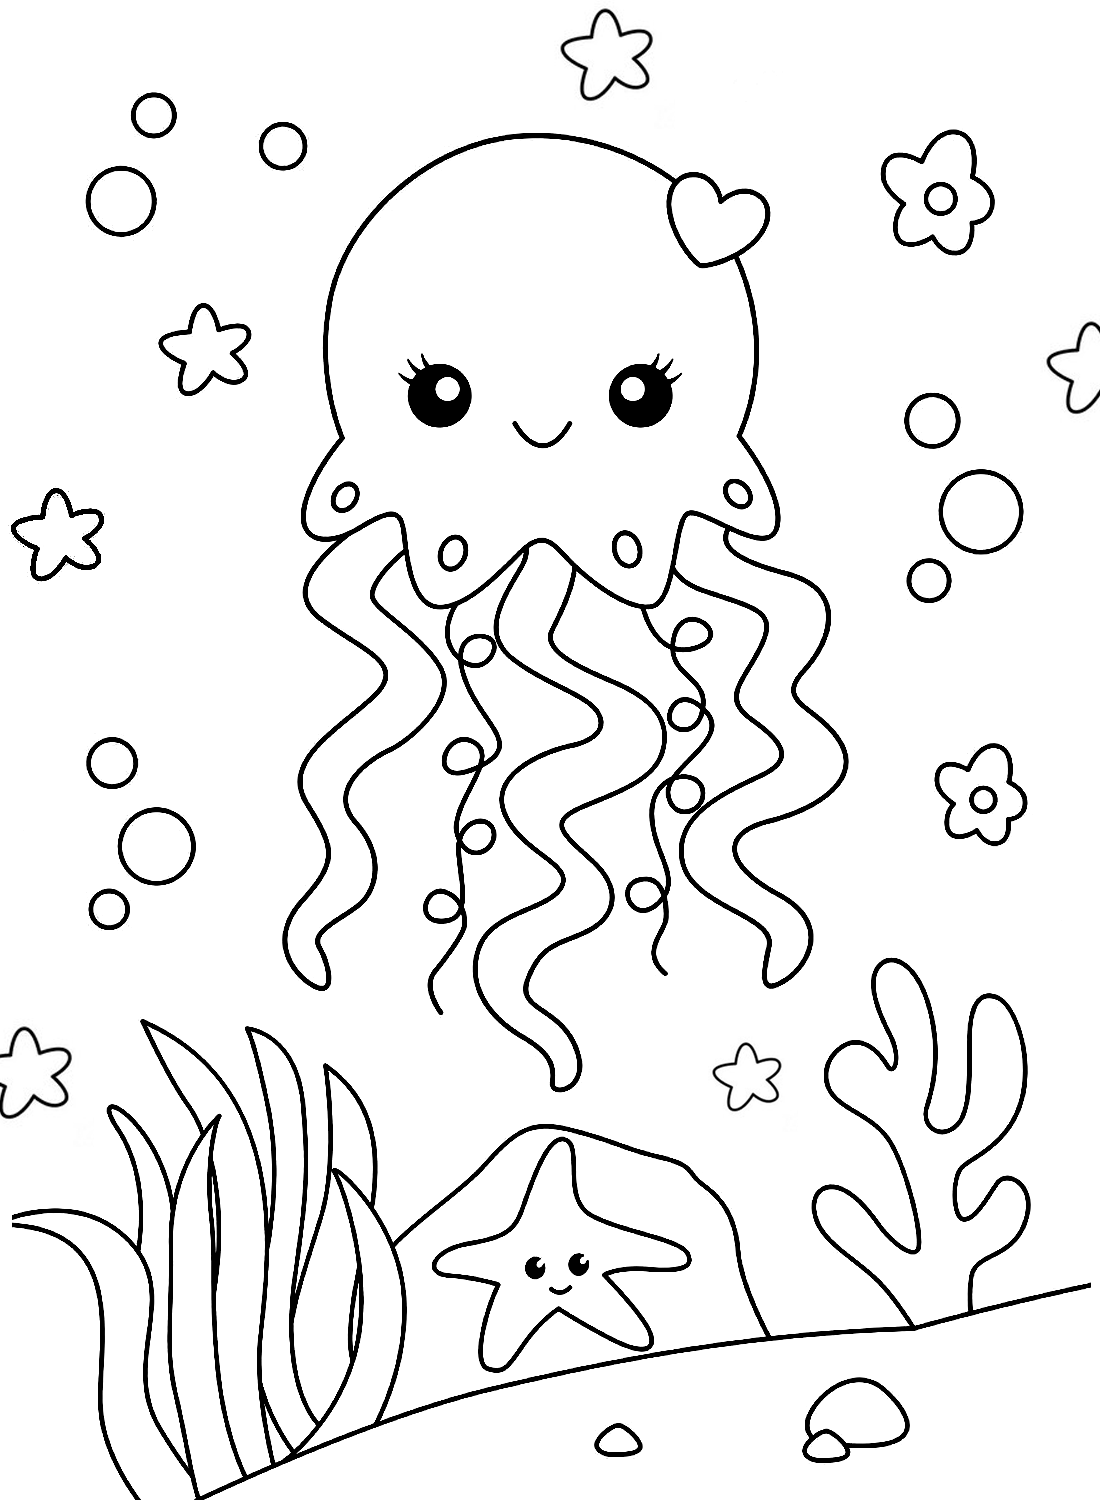 La pagina da colorare delle meduse